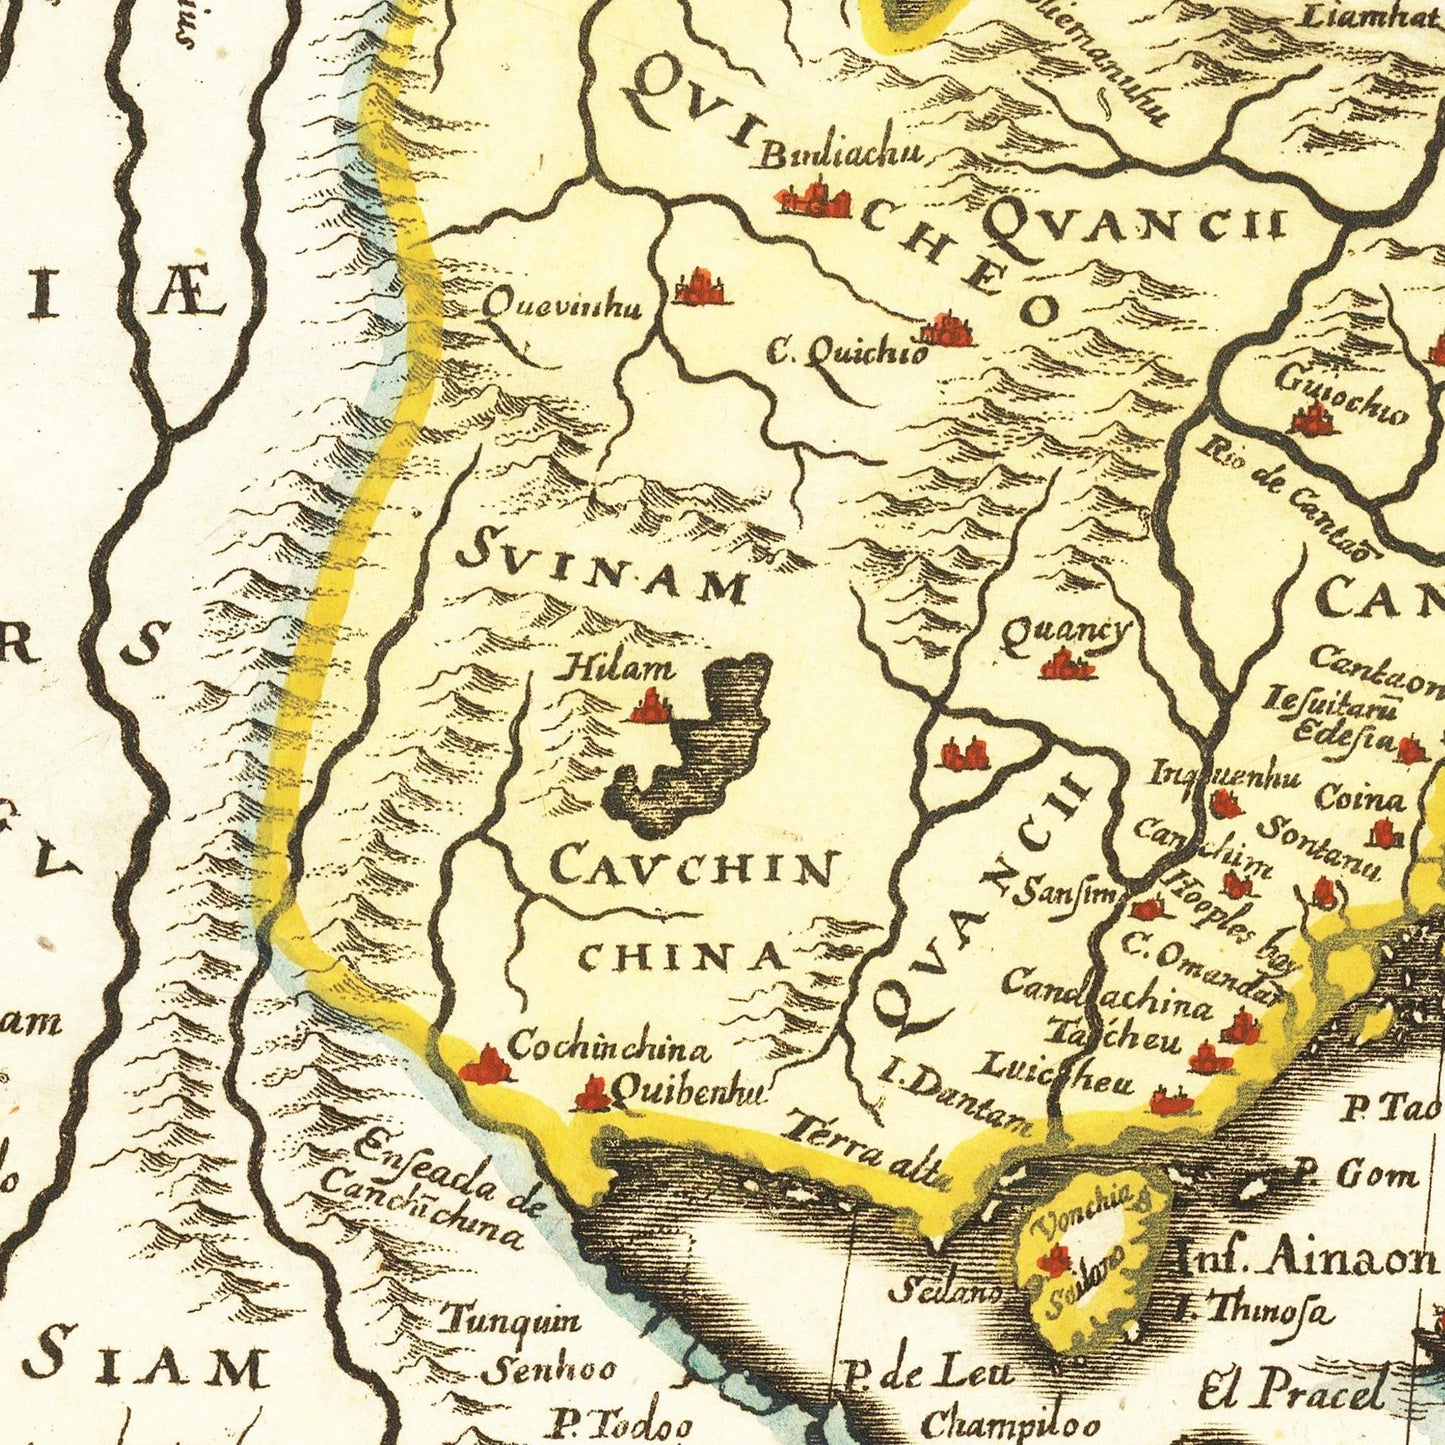 Historische Landkarte China um 1636